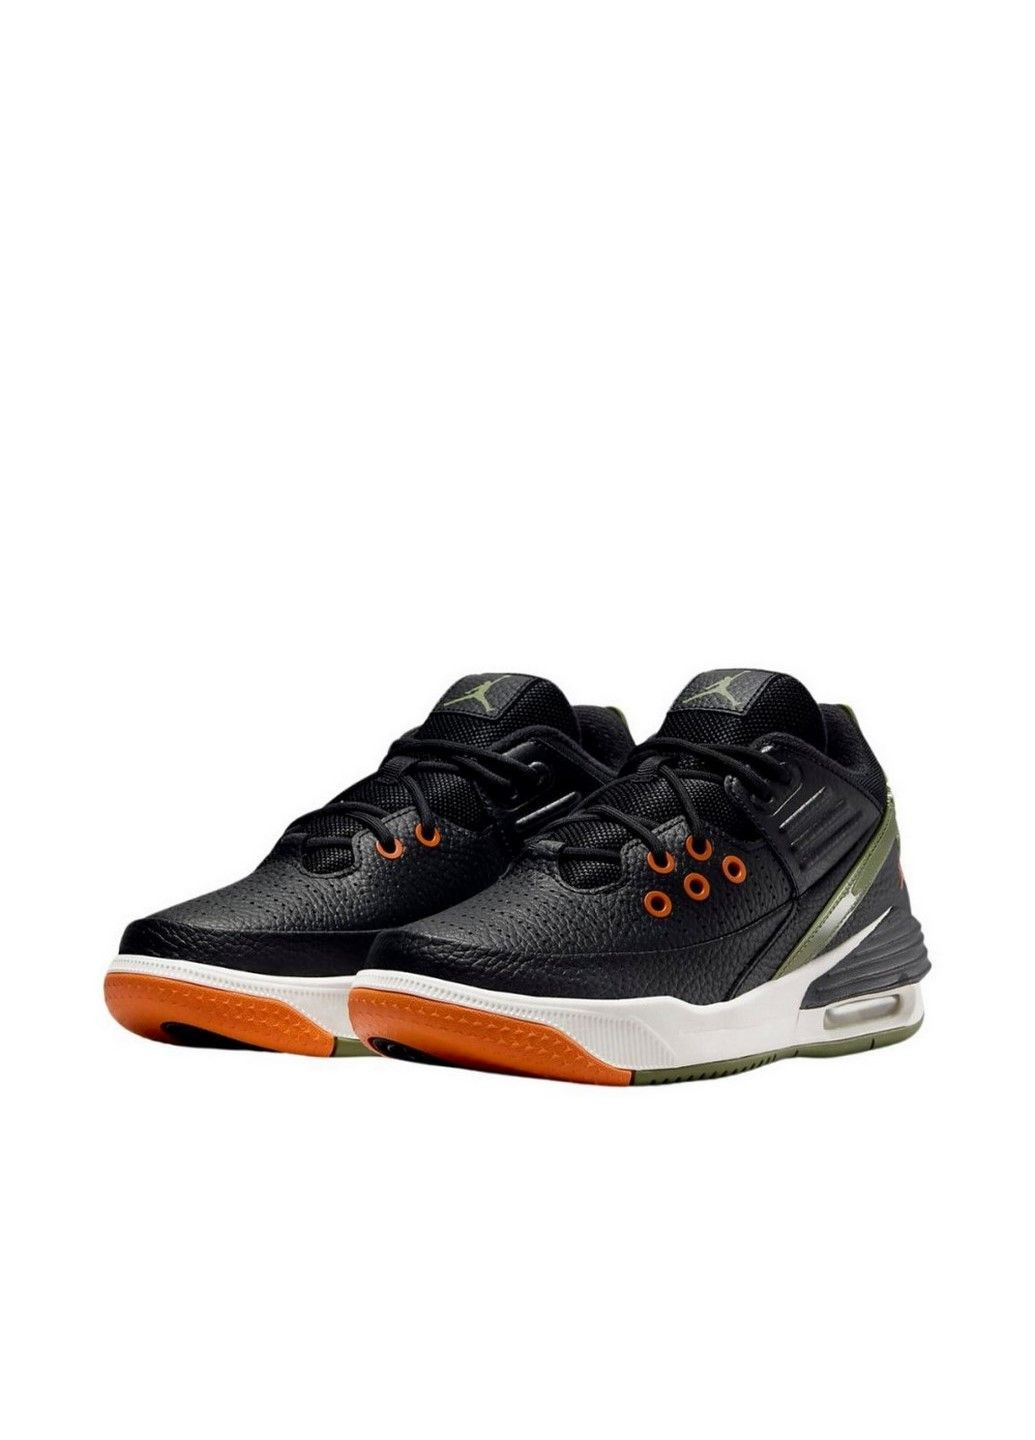 Чорні осінні кросівки max aura 5 (gs) dz4352-003 Jordan